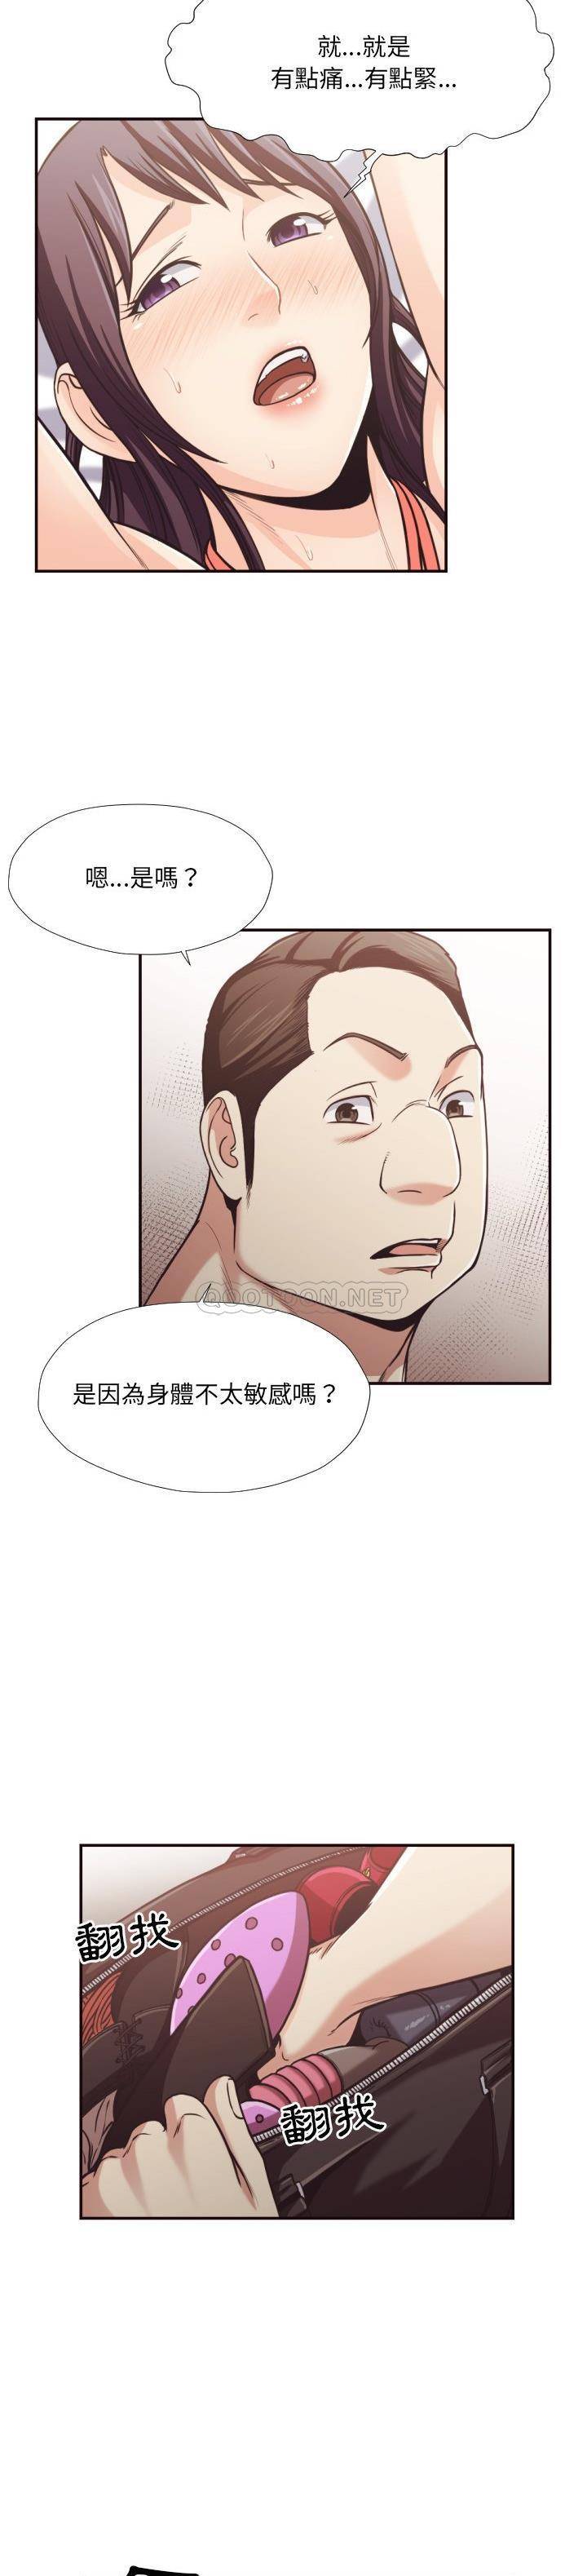 韩国污漫画 老師的黑歷史 第28话 8